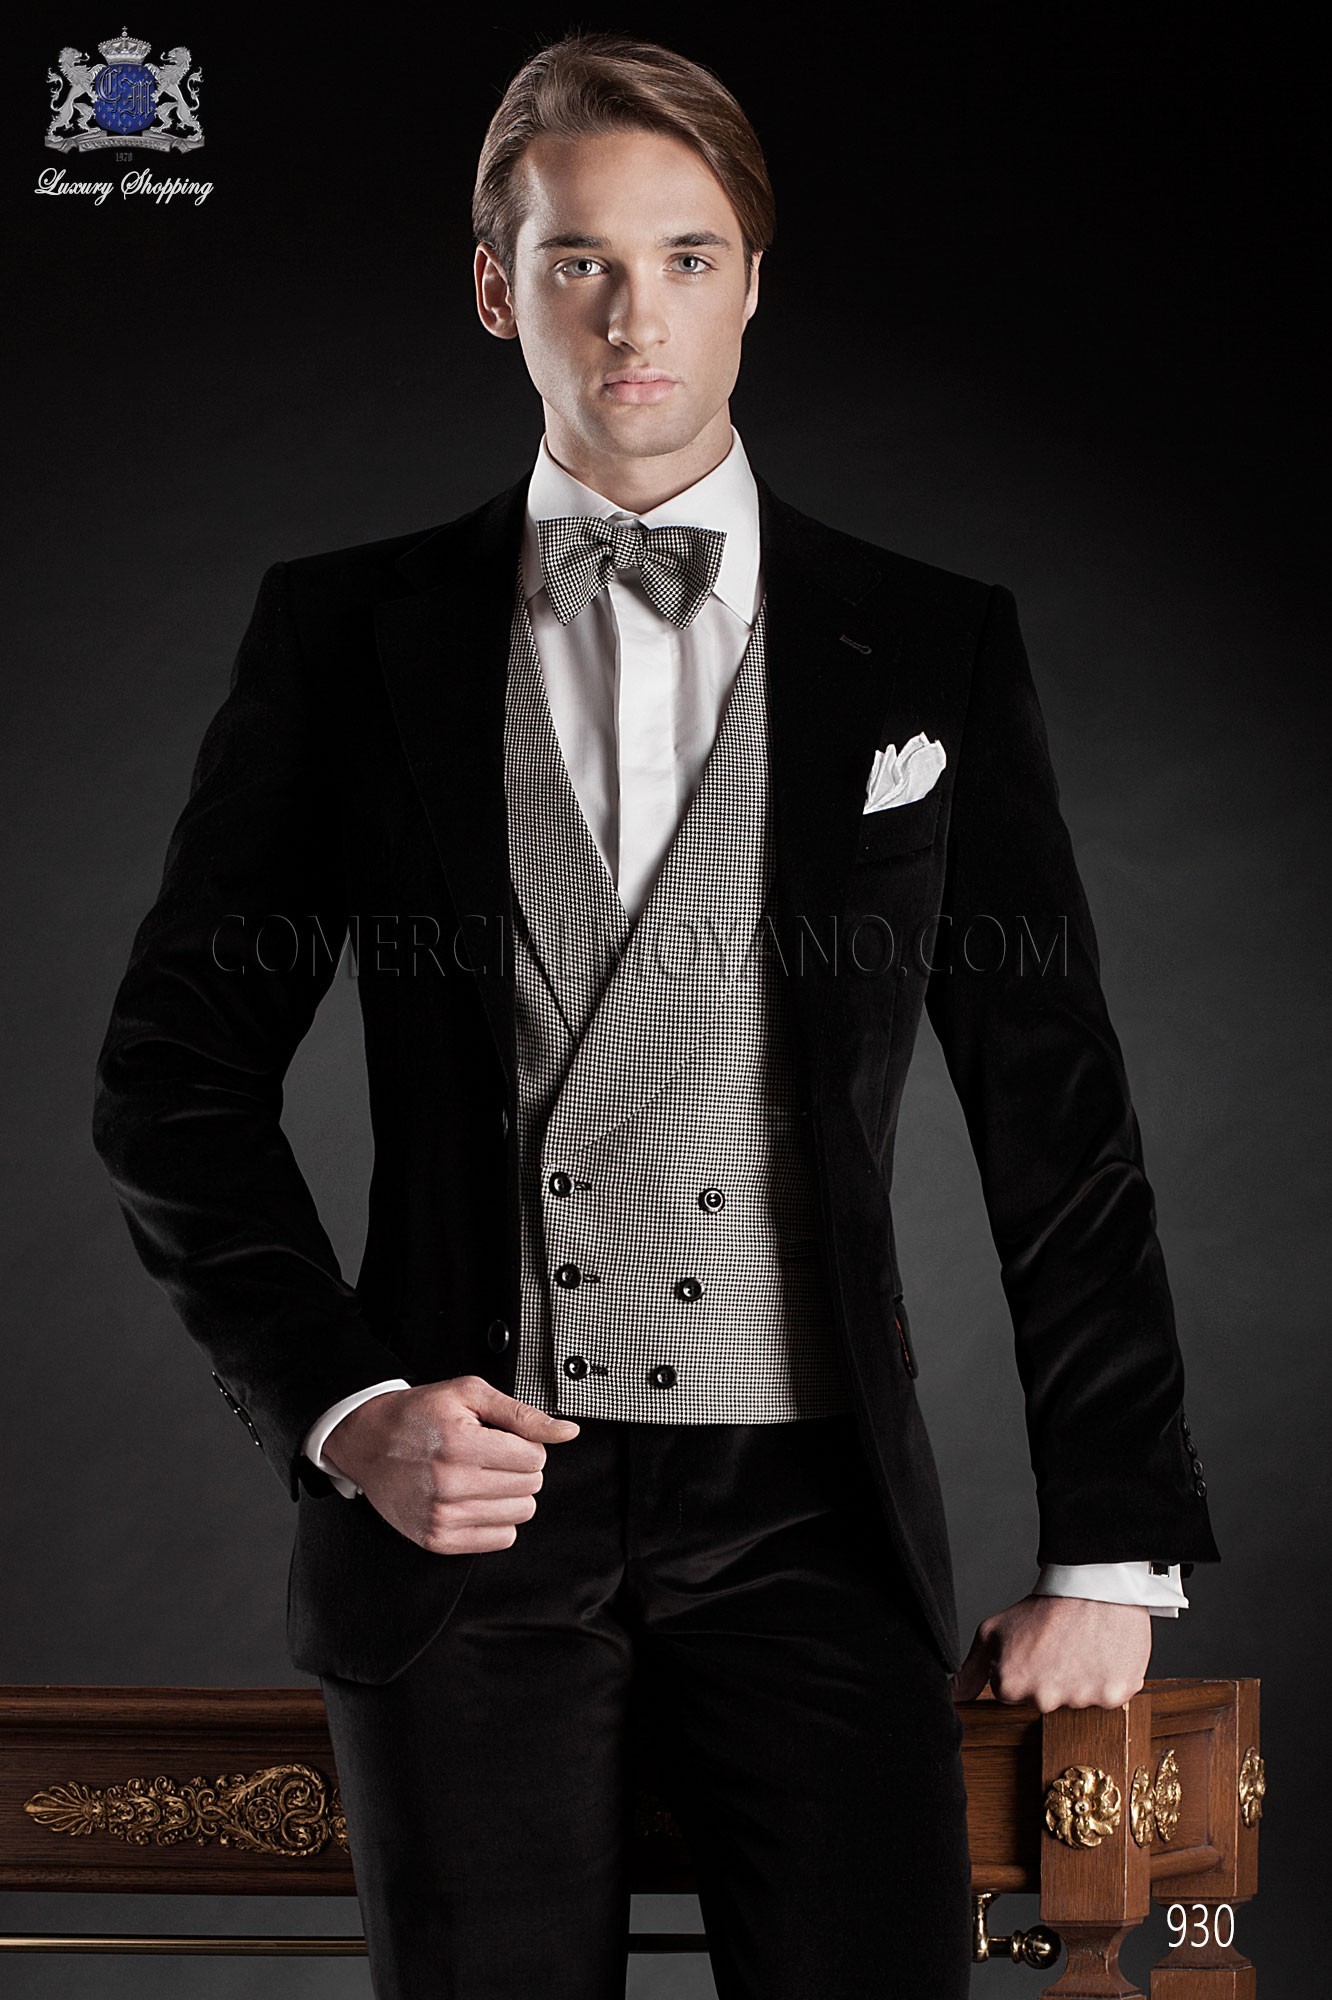 Black Tie black men wedding suit model 930 Mario Moyano